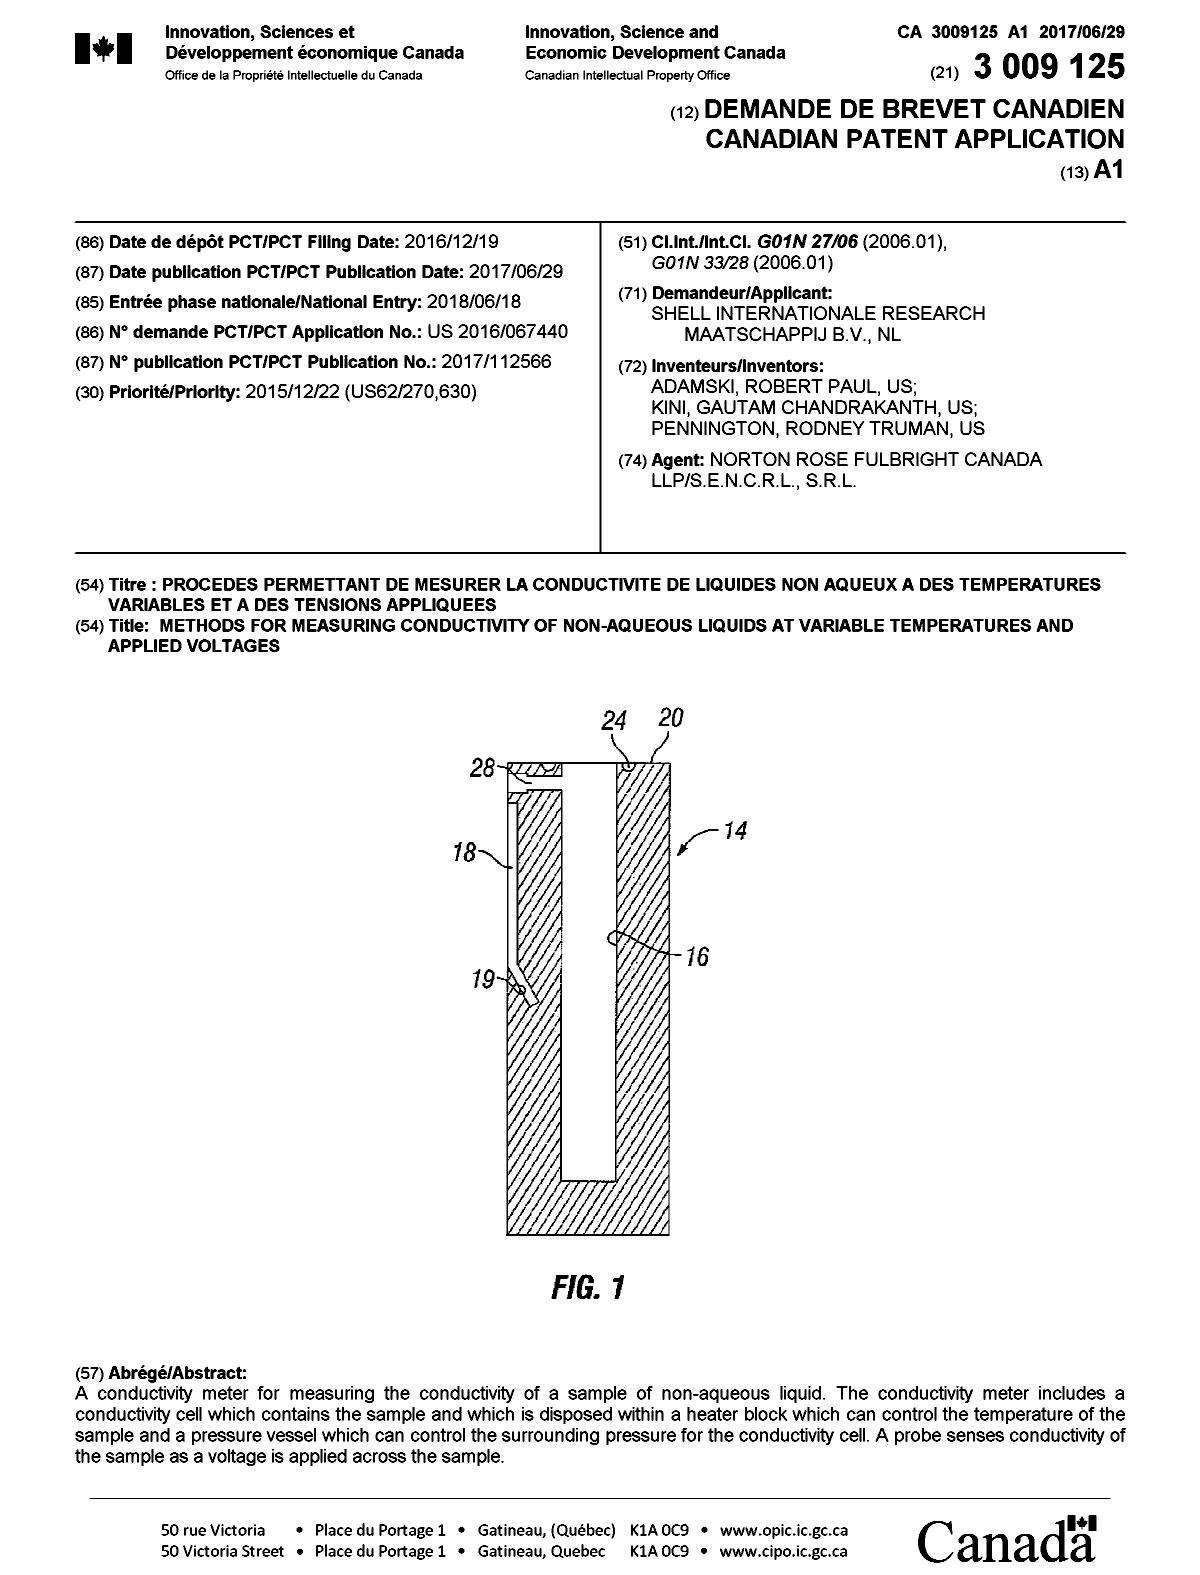 Document de brevet canadien 3009125. Page couverture 20180711. Image 1 de 1